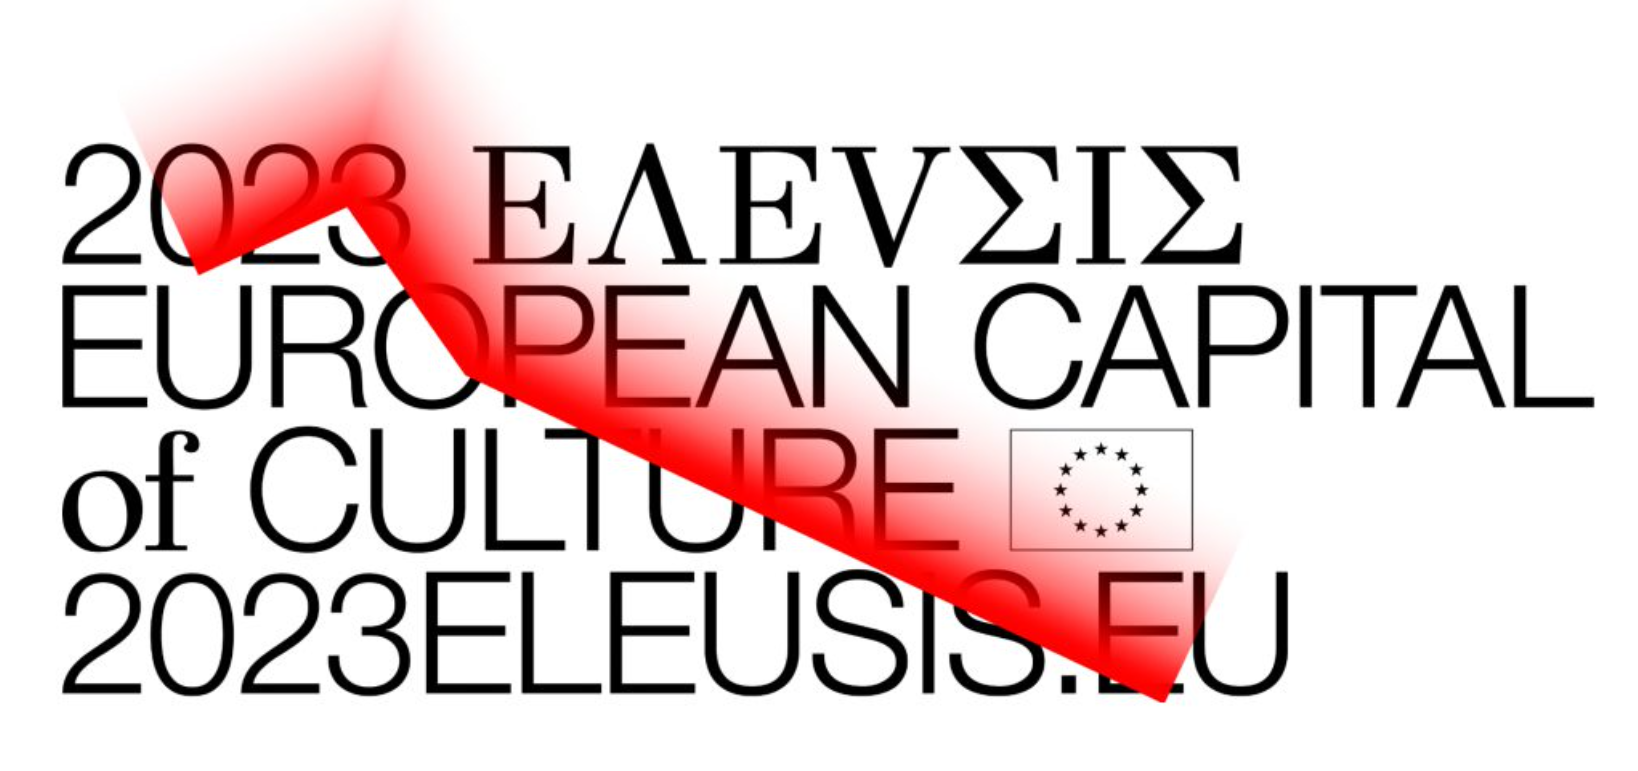 2023 Ελευσίς Πολιτιστική Πρωτεύουσα της Ευρώπης | αθηΝΕΑ